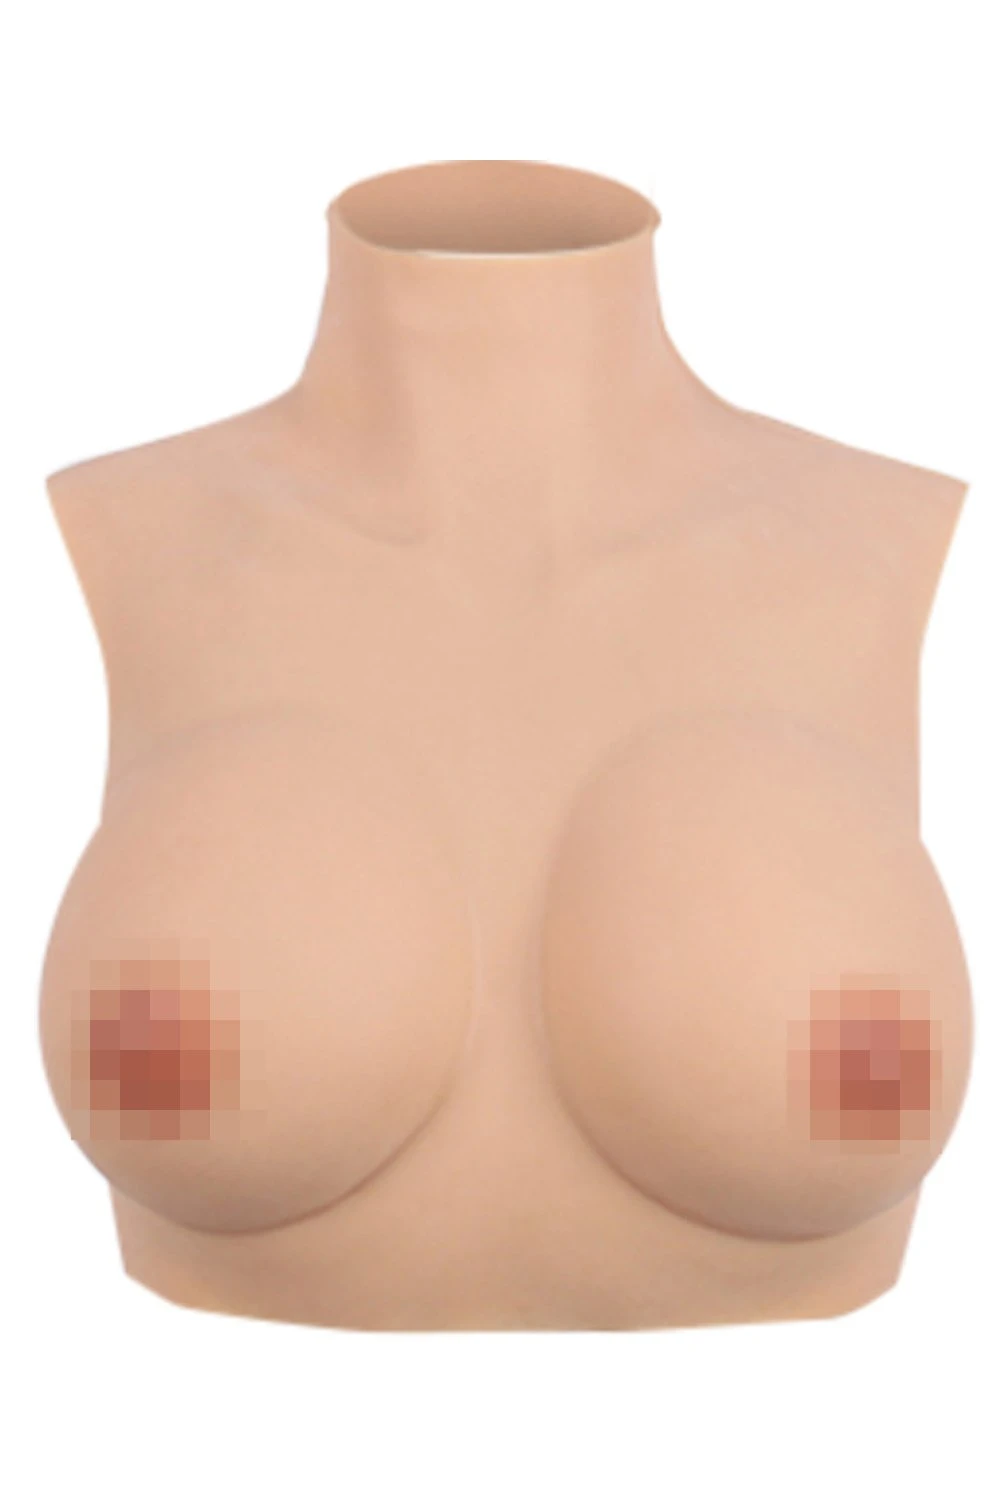 Silikon Brust Brustformen Brustprothese künstliche Brüste Transgender Crossdresser Realistische Haut - Erste Generation - Seidenbaumwolle B-G Cup